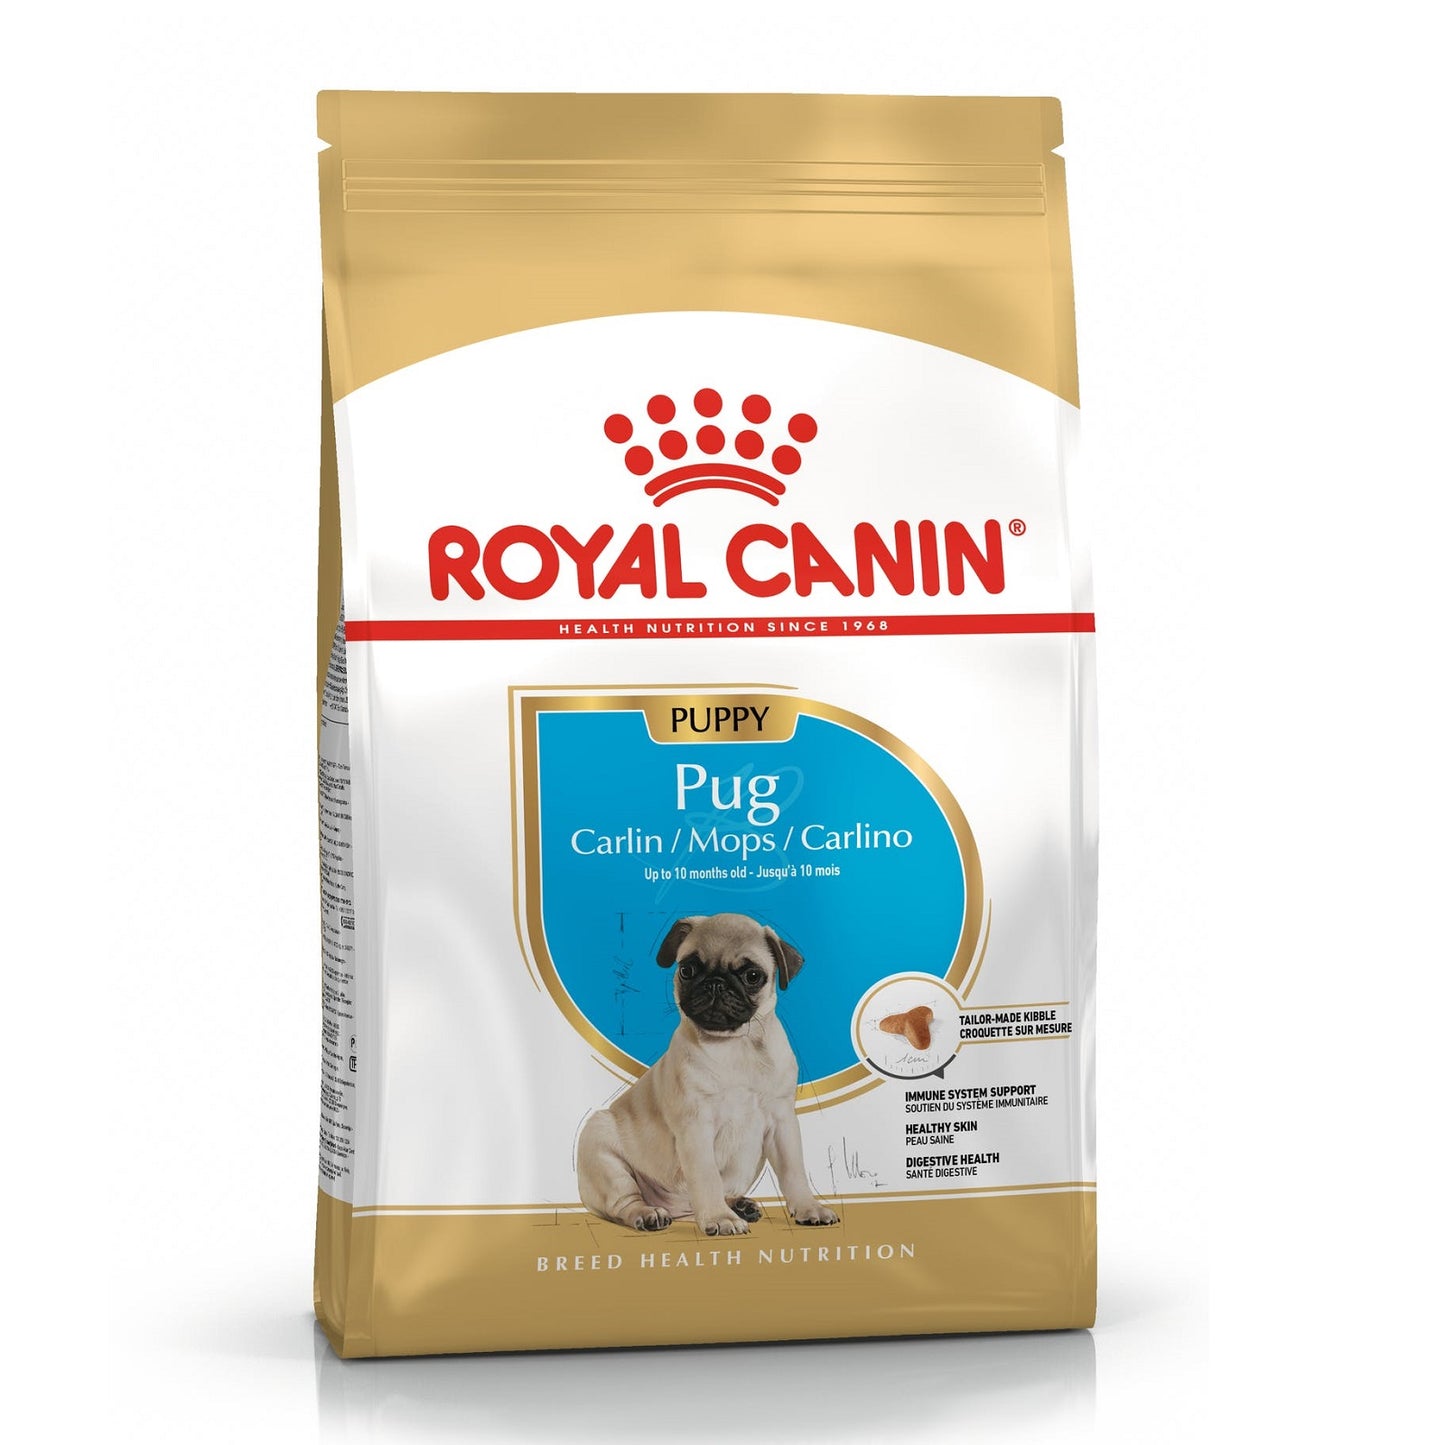 ROYAL CANIN - Pug Puppy (1.5kg)